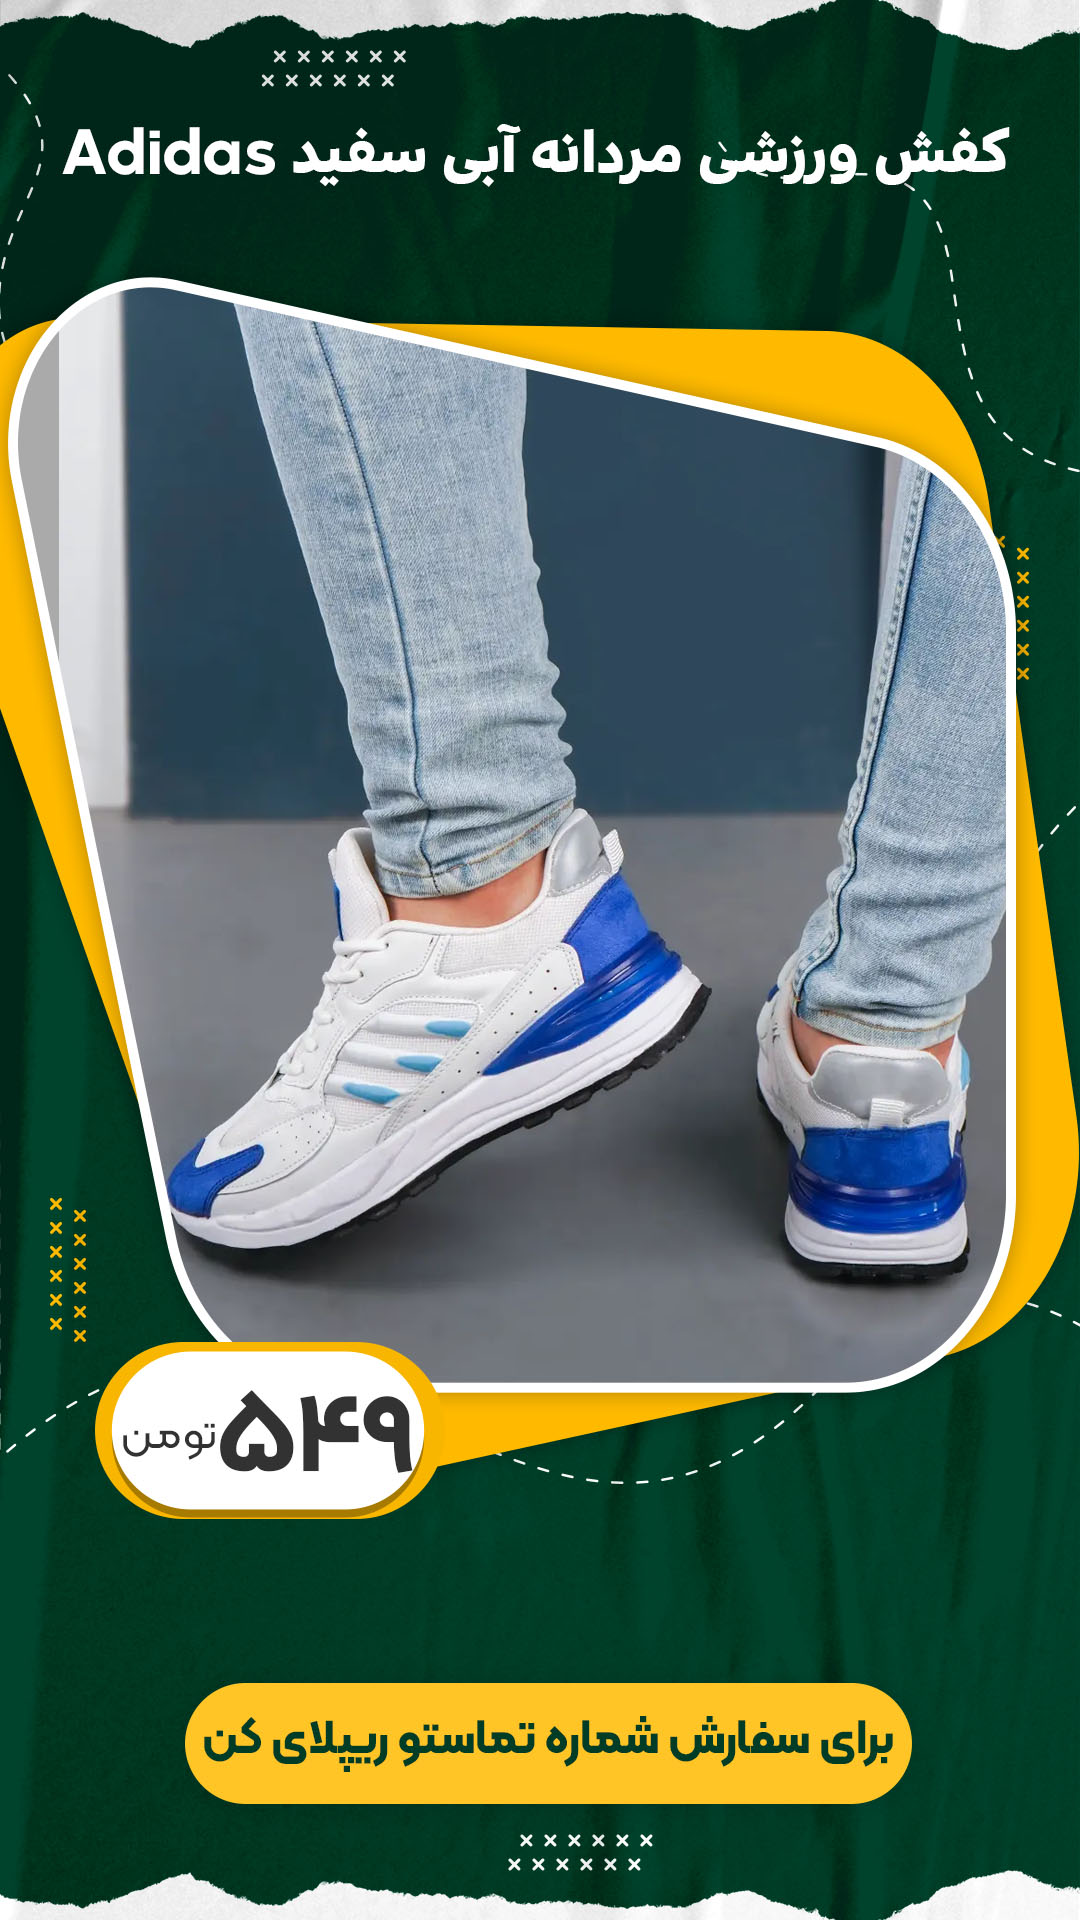 کفش ورزشی مردانه آبی سفید Adidas مدل Toka